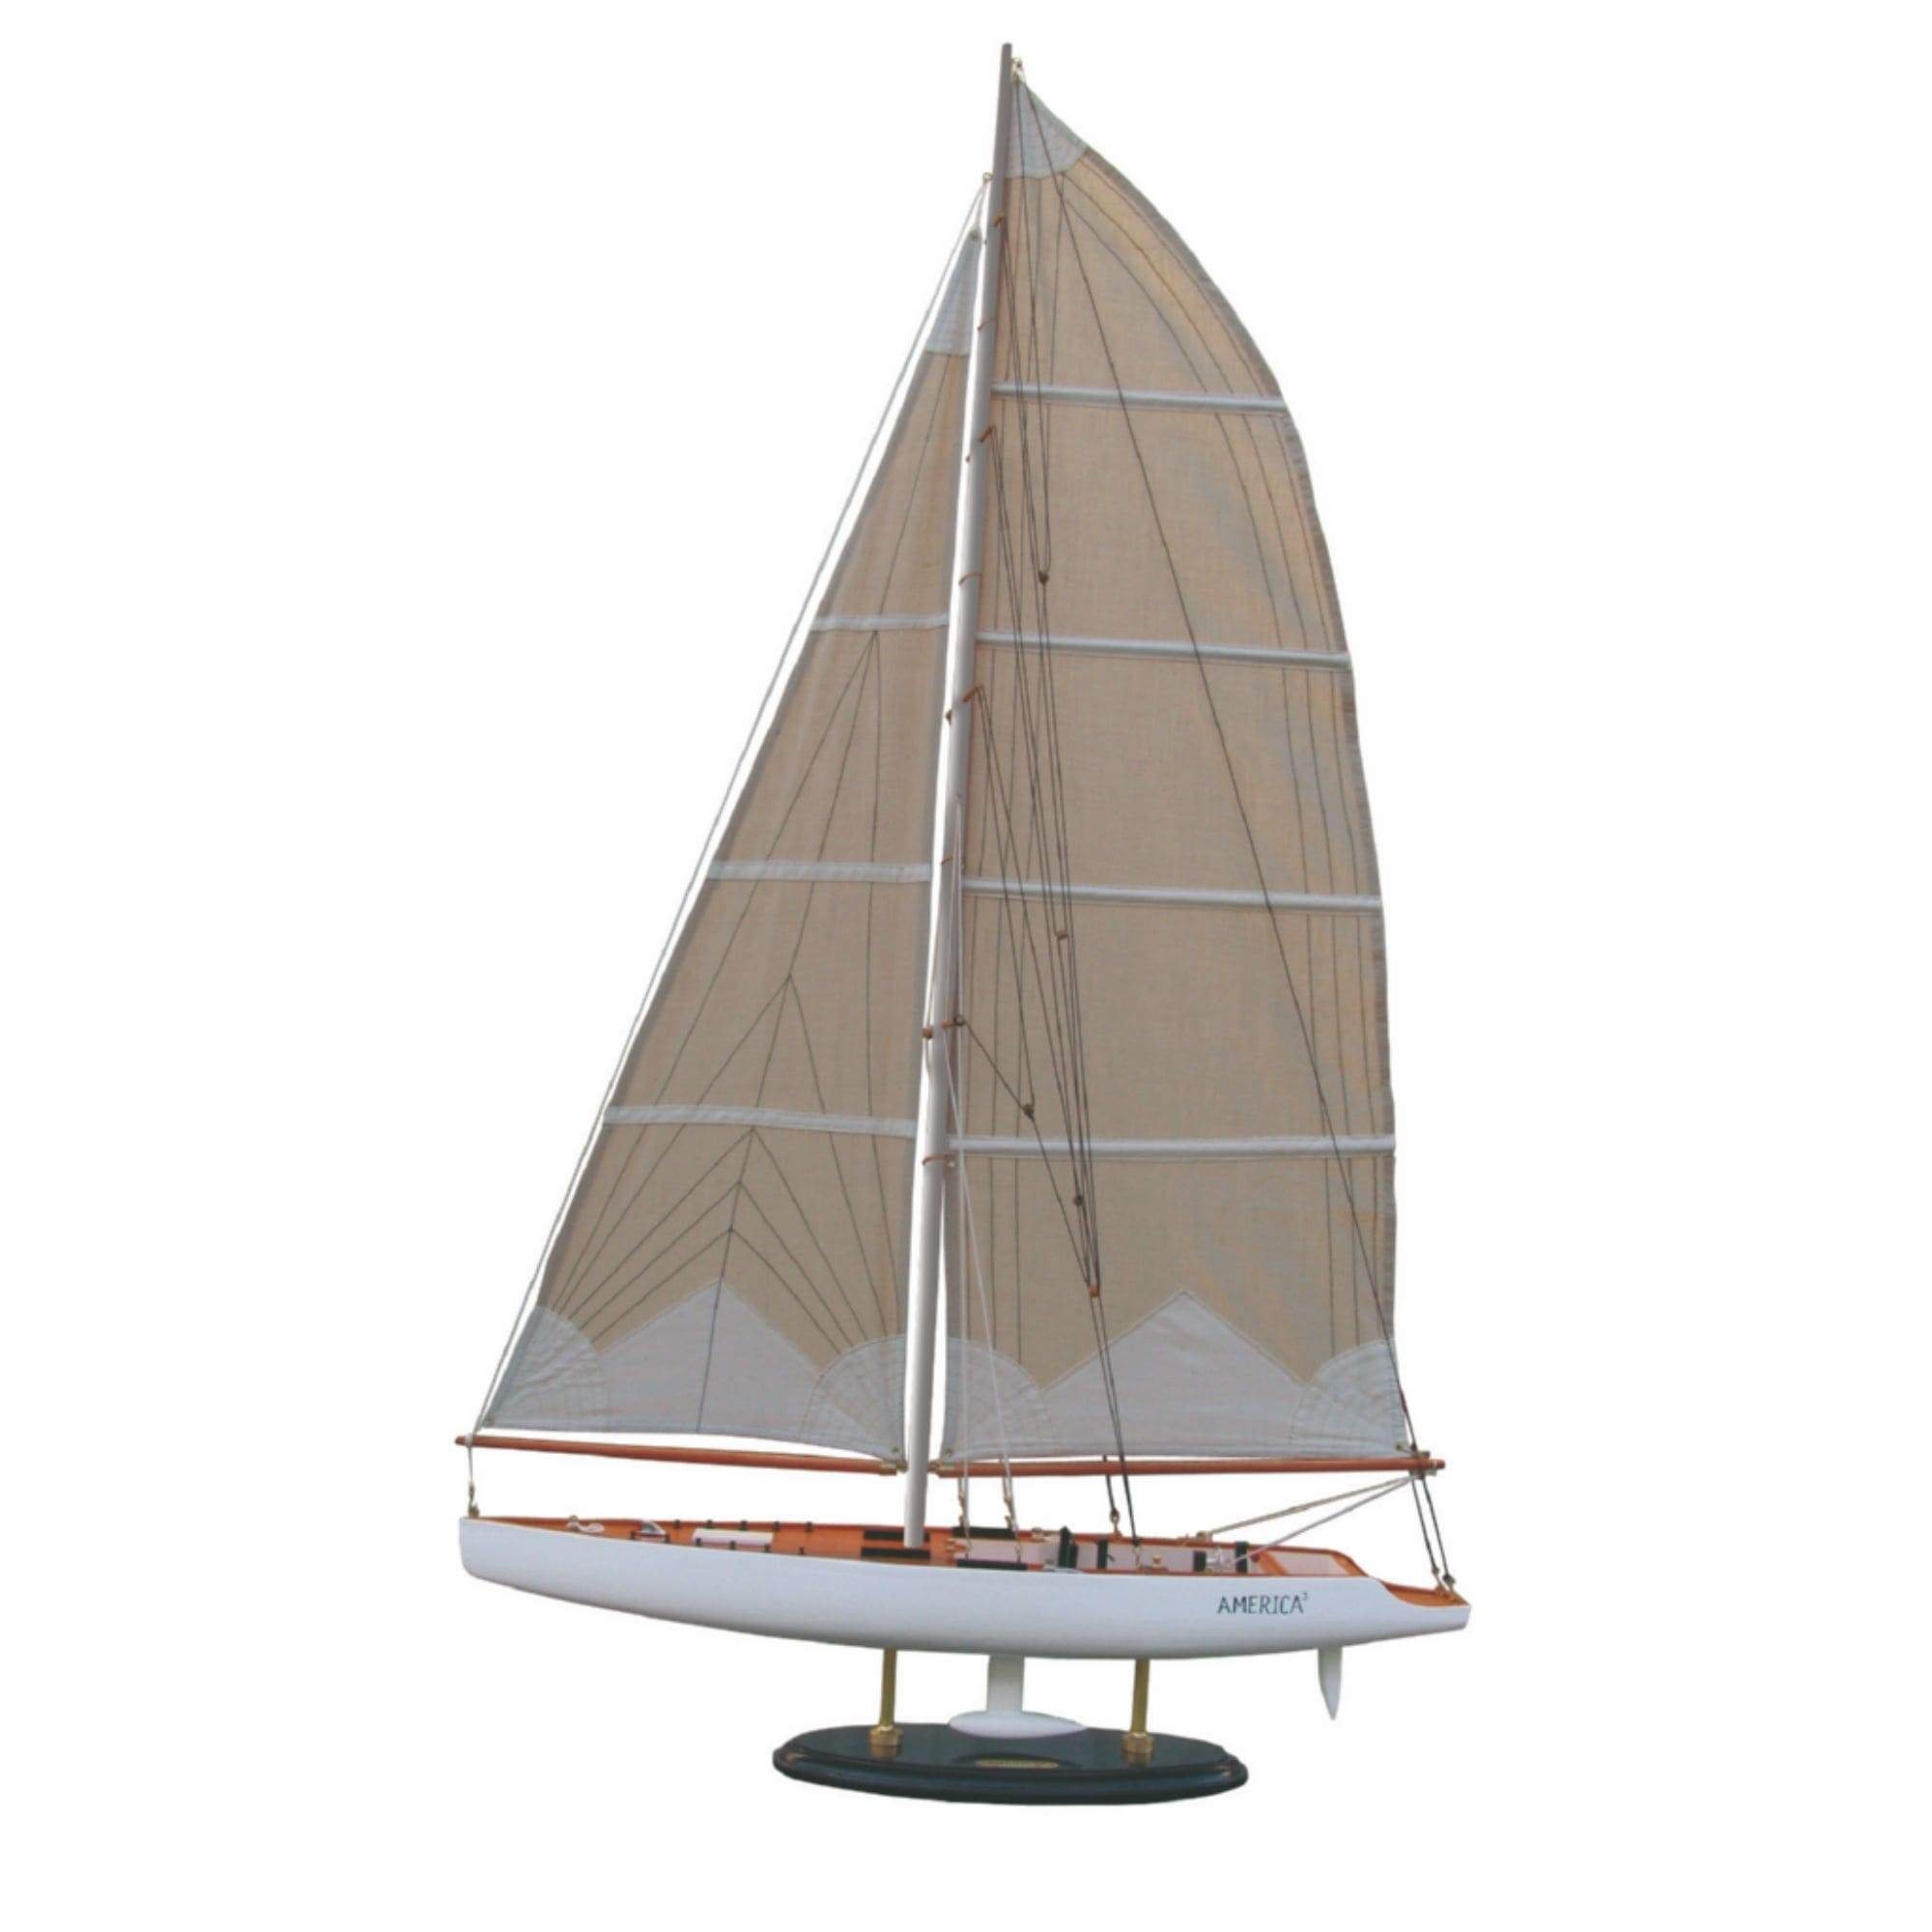 America – Model Boat – L:46cm – H:68cm